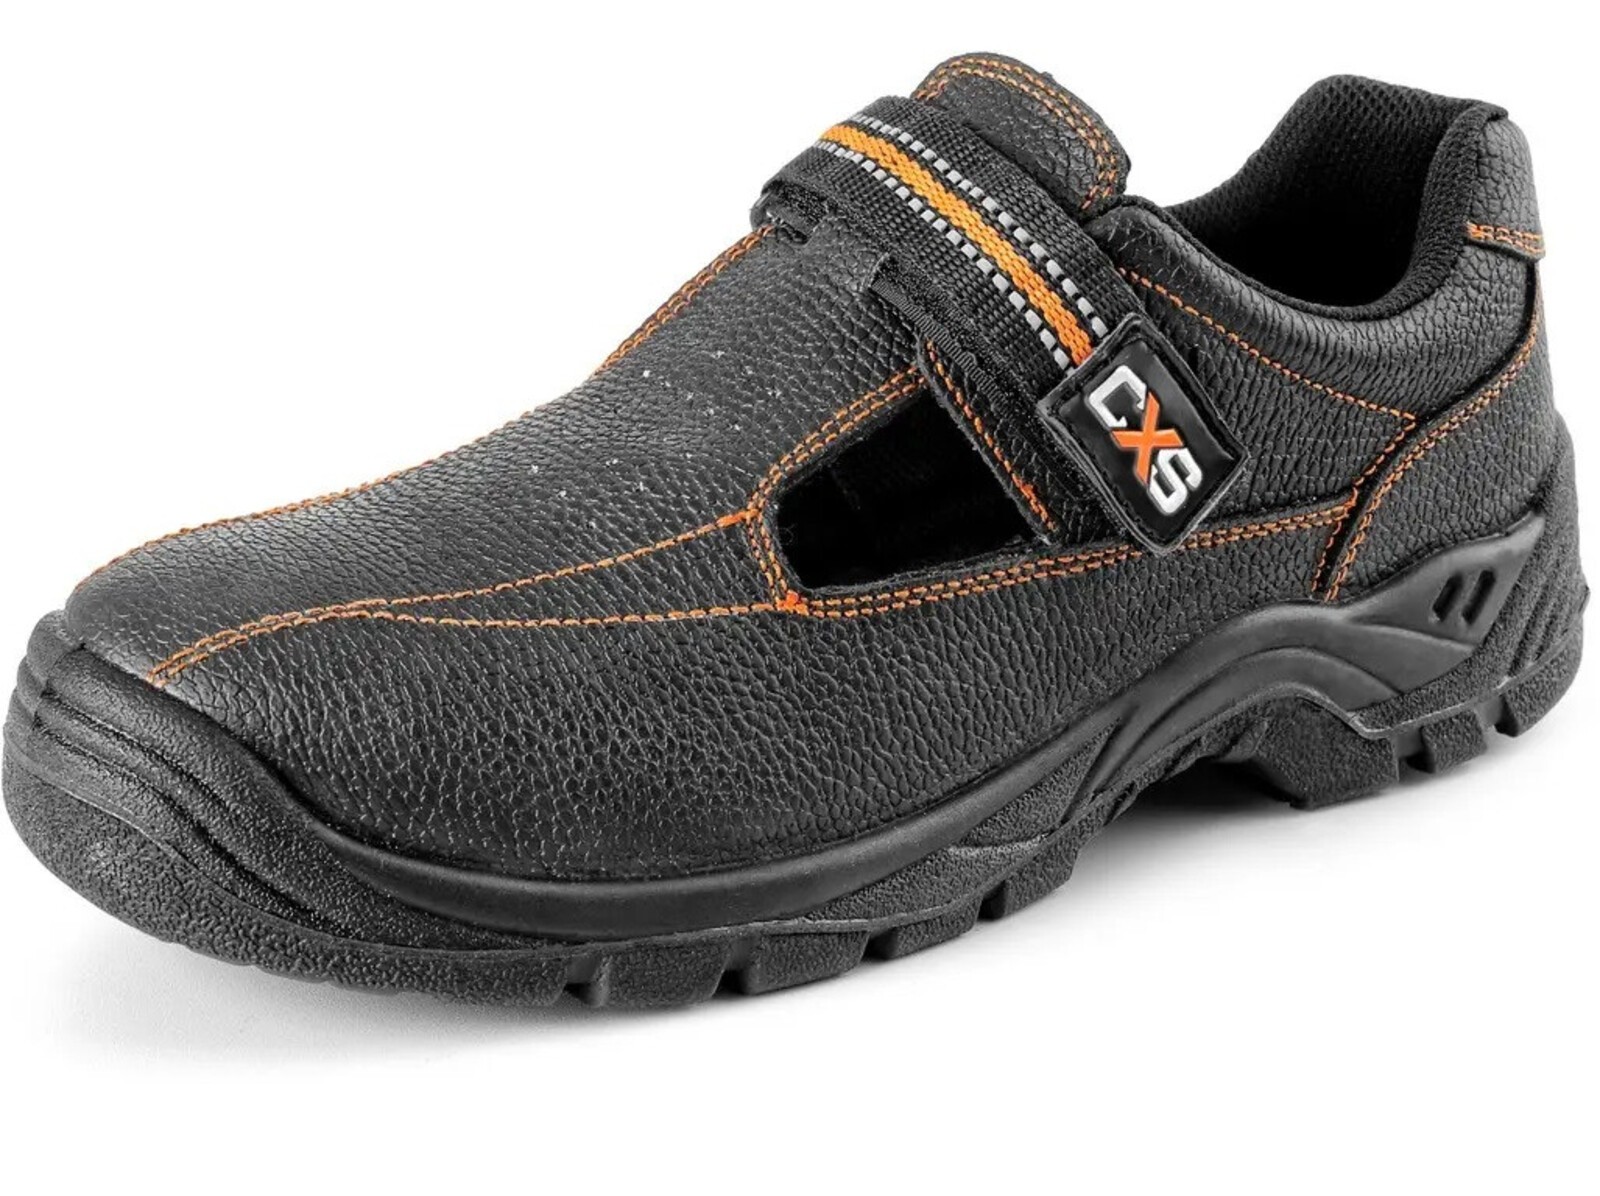 Bezpečnostné sandále CXS Stone Nefrit S1 SRC - veľkosť: 50, farba: čierna/oranžová